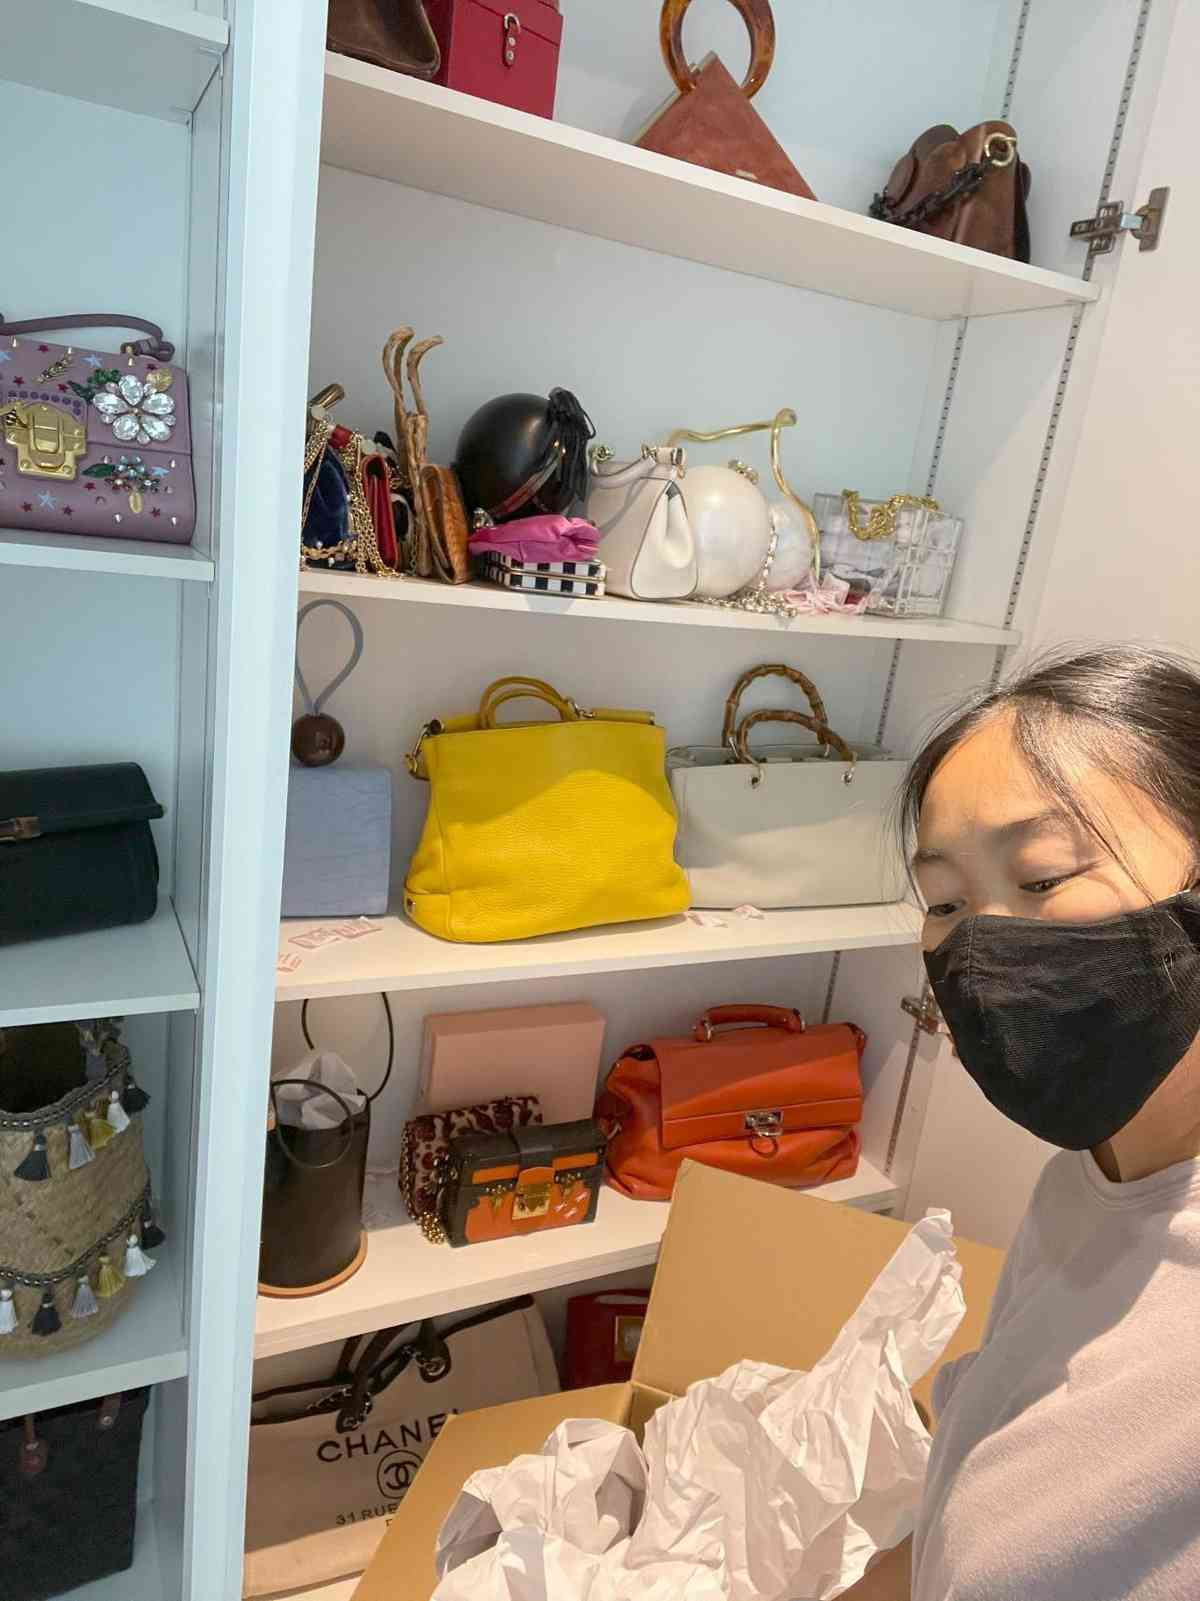 "Chị đẹp" Đoan Trang khoe nhà ở Singapore, góc bếp "triệu đô" có gì khiến bao bà nội trợ "chỉ biết ước"